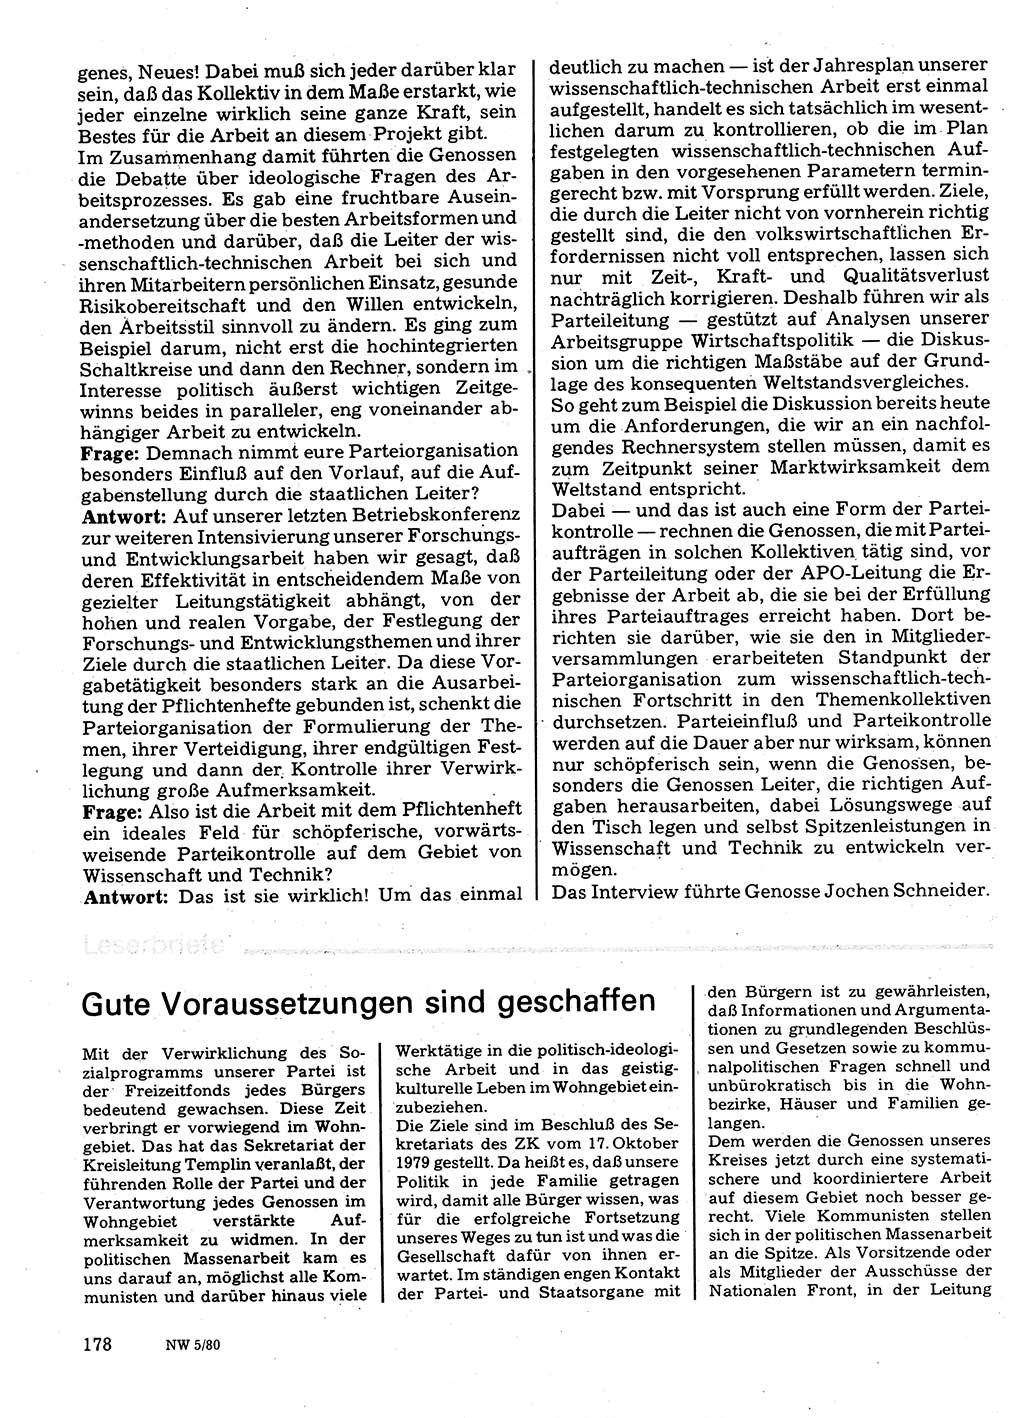 Neuer Weg (NW), Organ des Zentralkomitees (ZK) der SED (Sozialistische Einheitspartei Deutschlands) für Fragen des Parteilebens, 35. Jahrgang [Deutsche Demokratische Republik (DDR)] 1980, Seite 178 (NW ZK SED DDR 1980, S. 178)